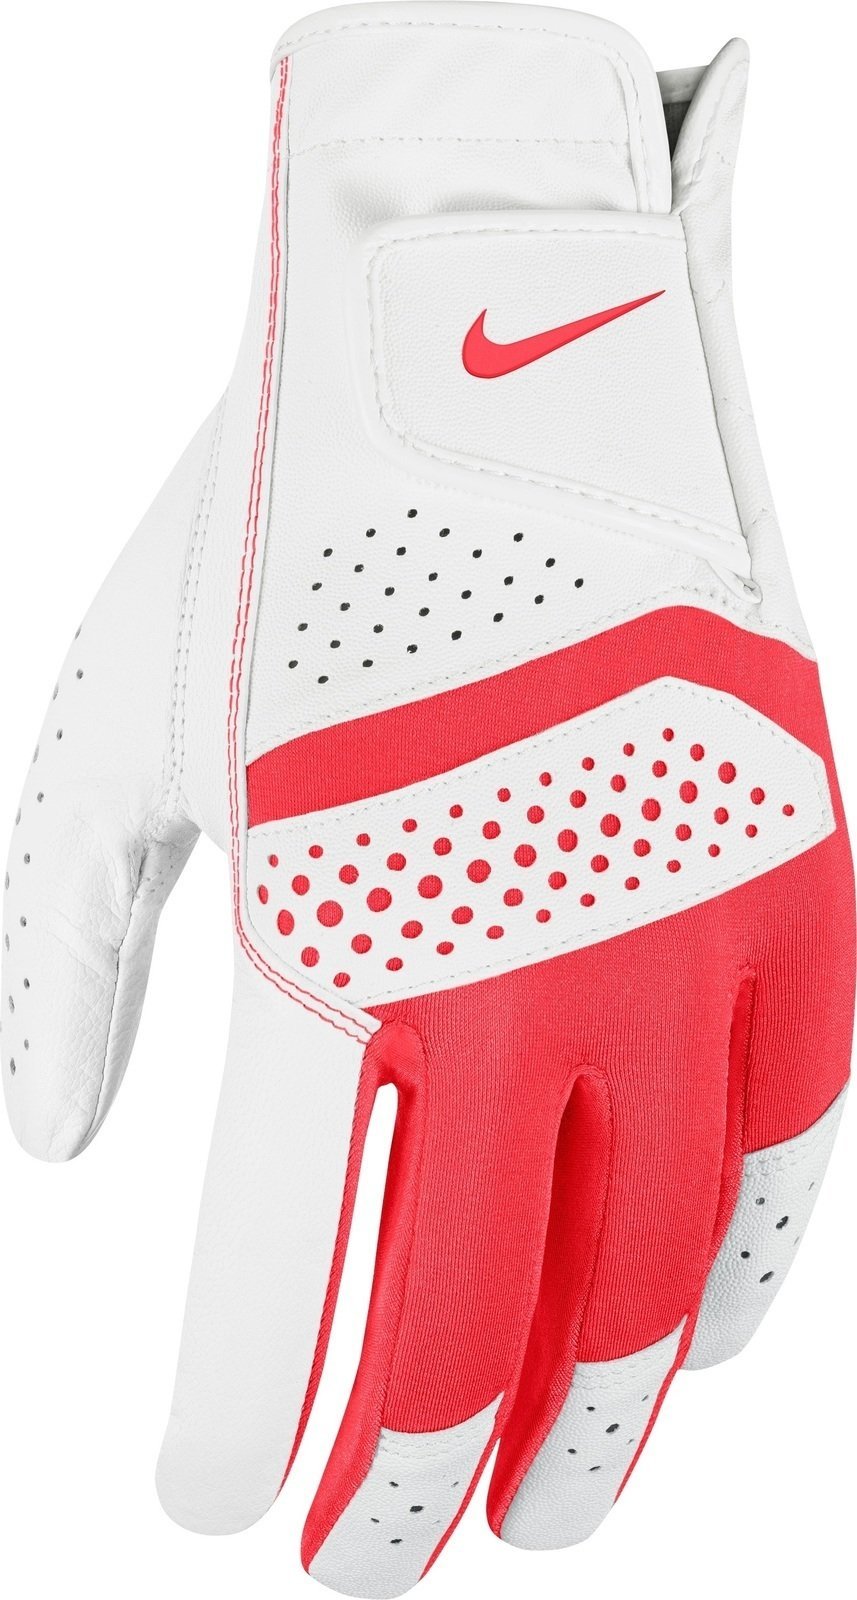 Gloves Nike Tech Extreme Vi Reg Lh 106 L